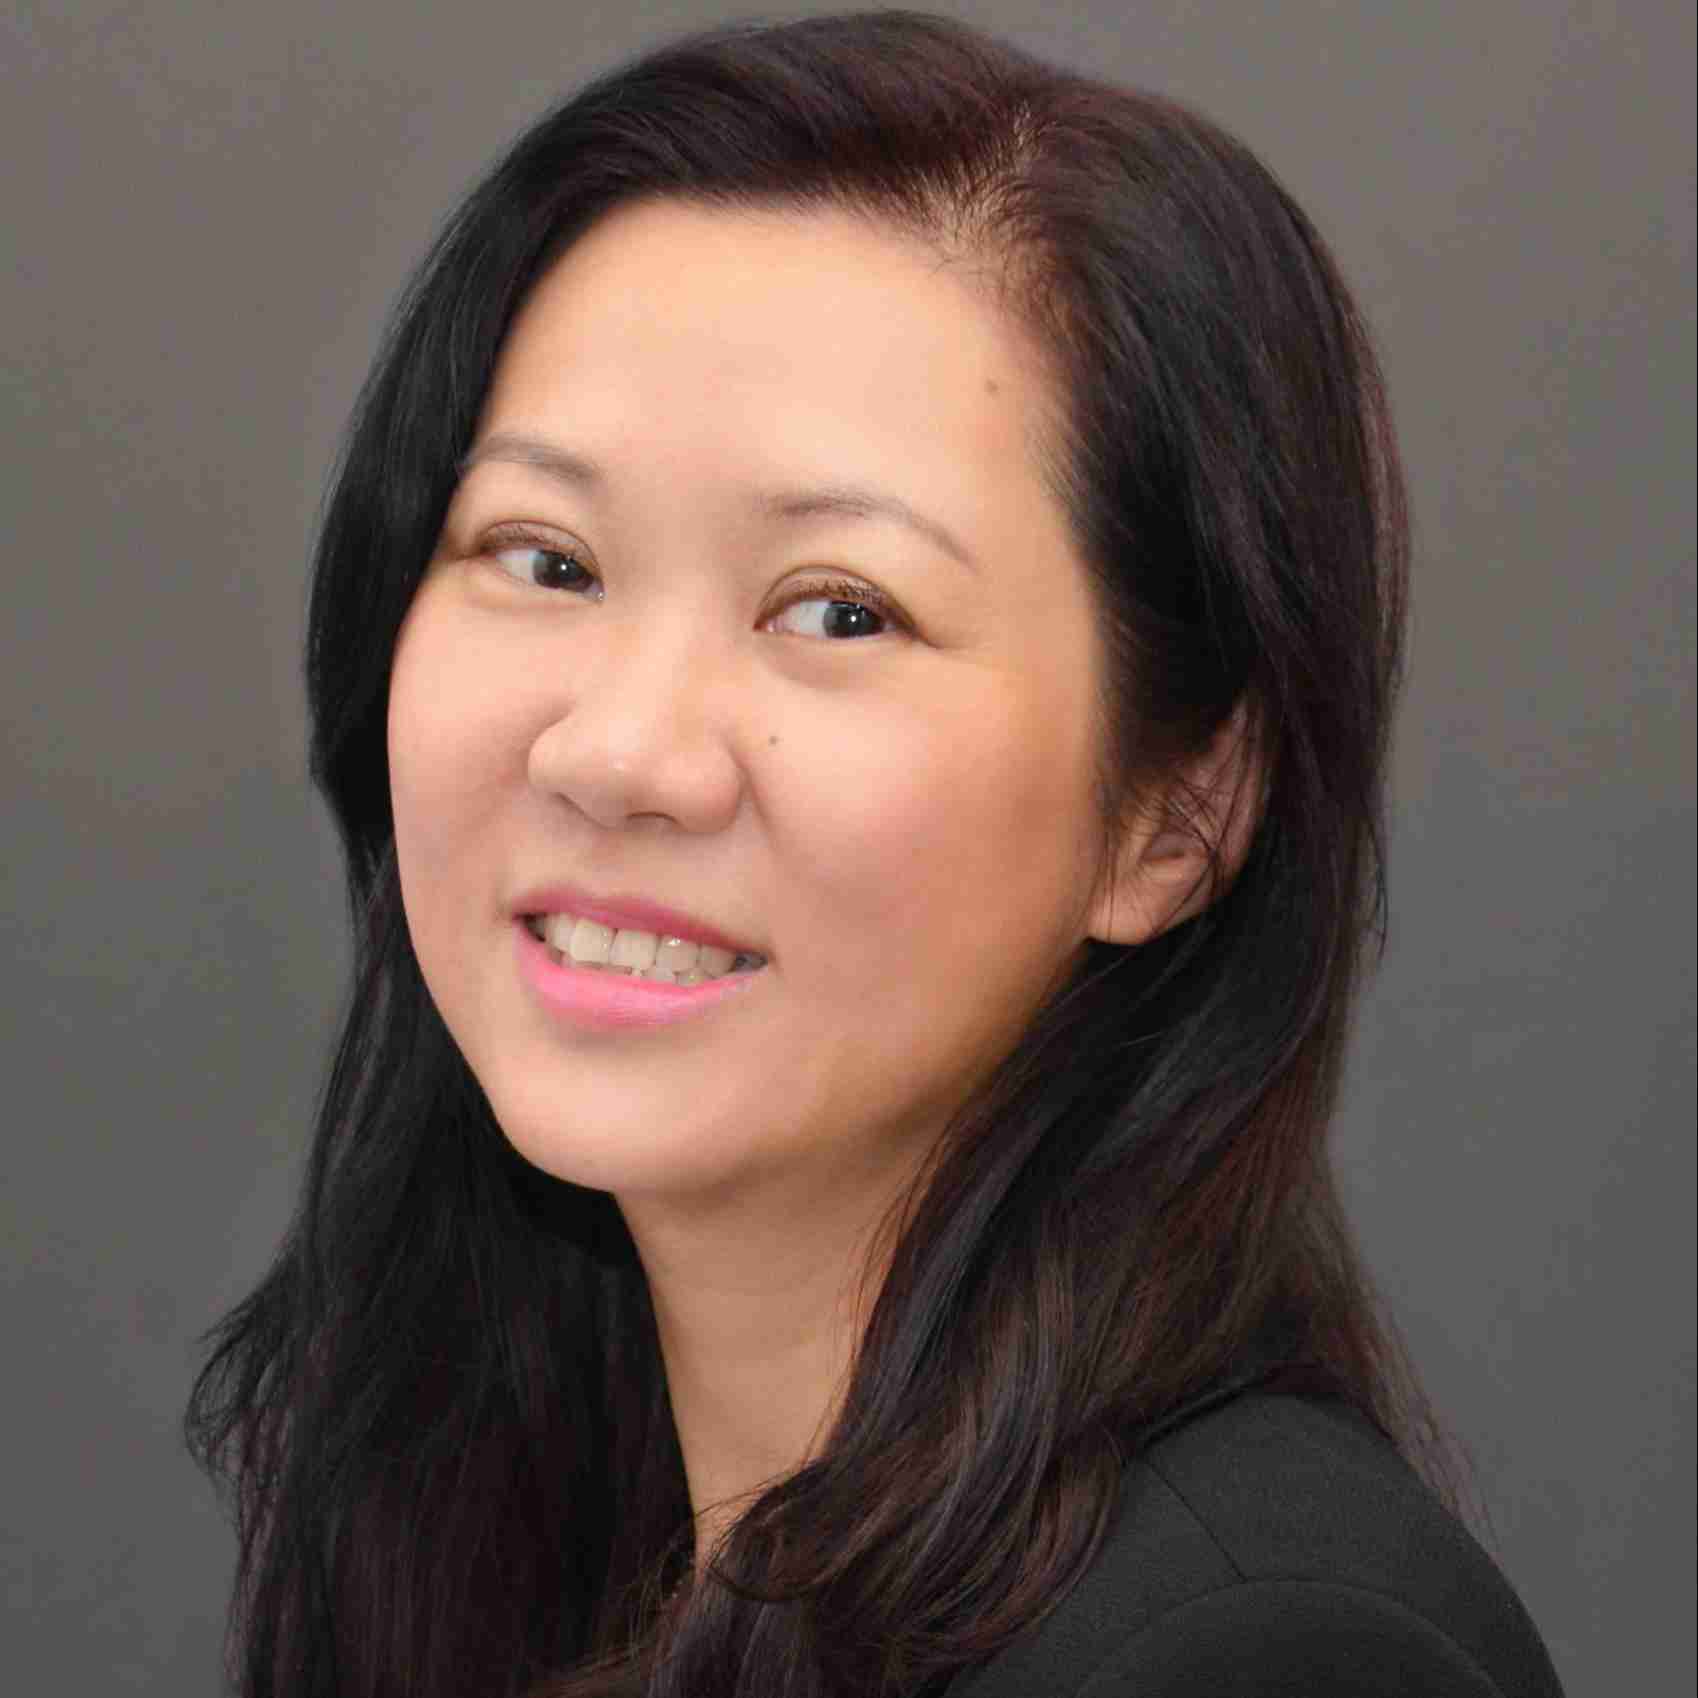 Profile image of Dr Angela Chu